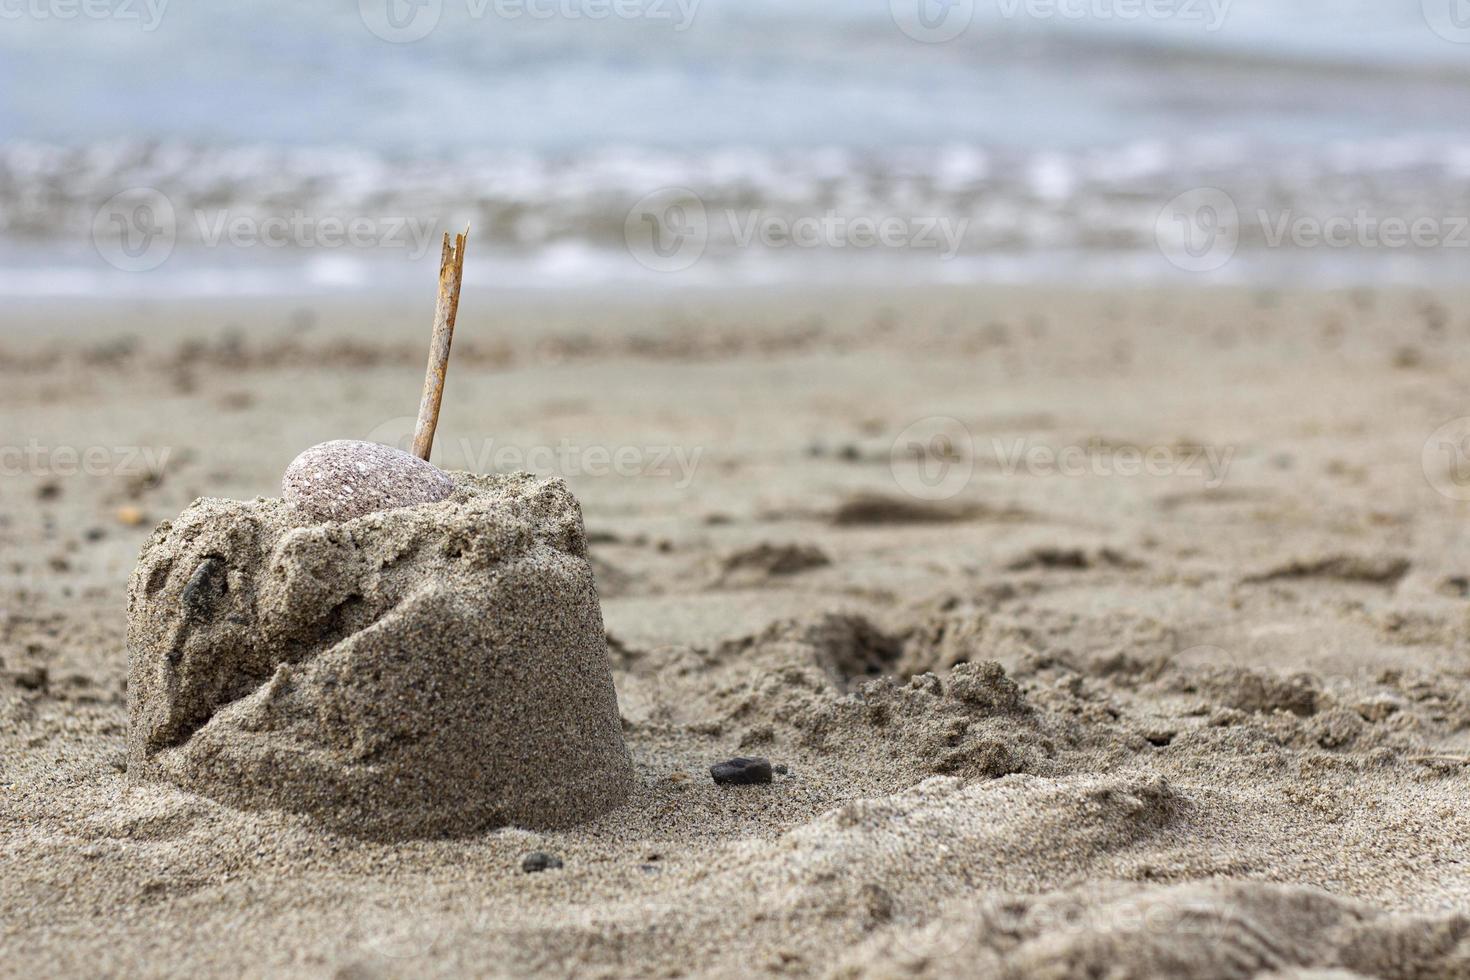 montanha de areia com uma vara de madeira na beira-mar da praia. castelo de areia com uma pedra na praia. close-up de pequenos castelos de areia com uma vara coberta contra um céu azul foto